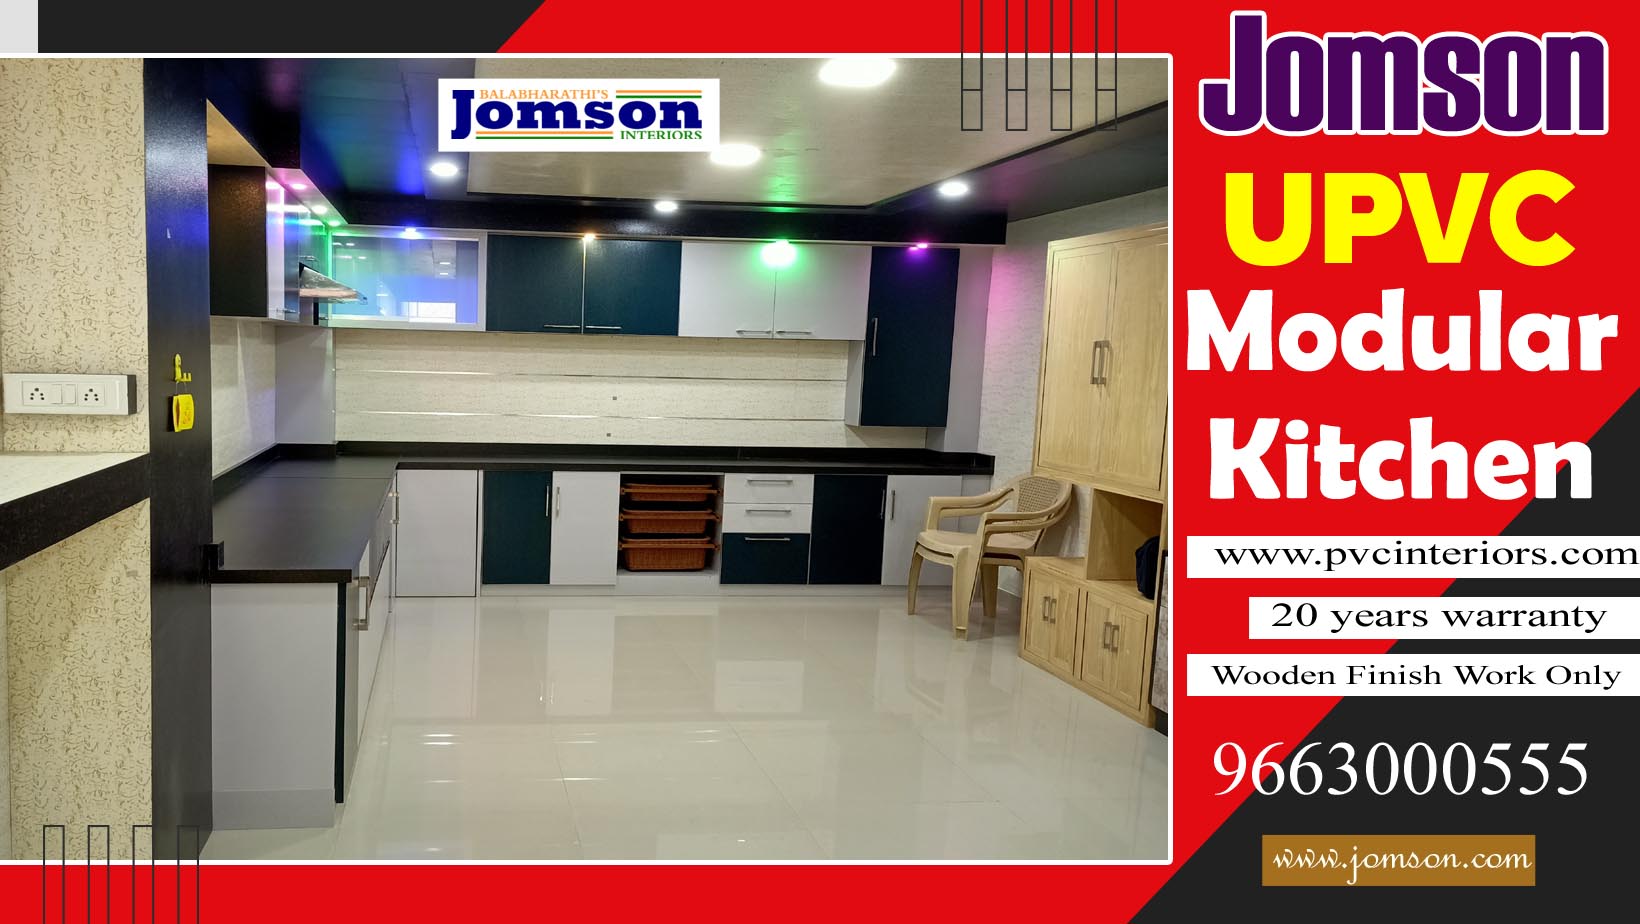 jomson upvc modular kitchen